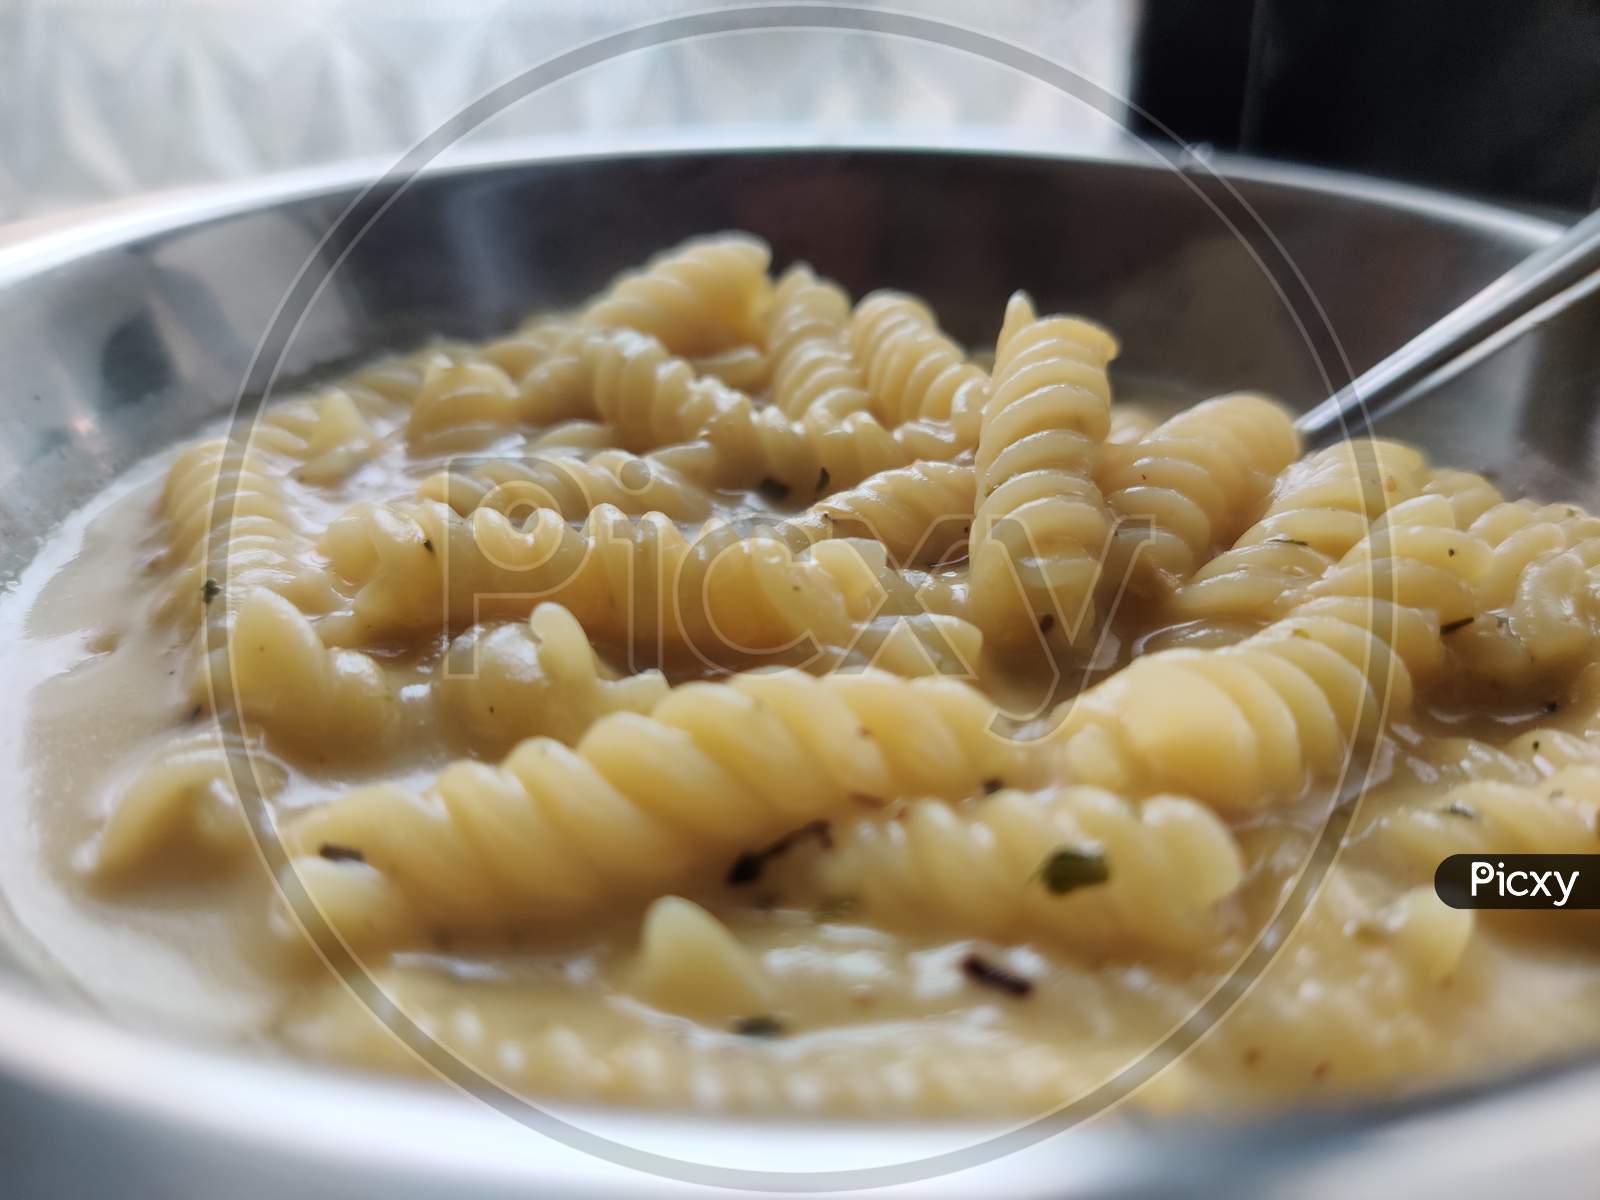 Cheesy creamy pasta